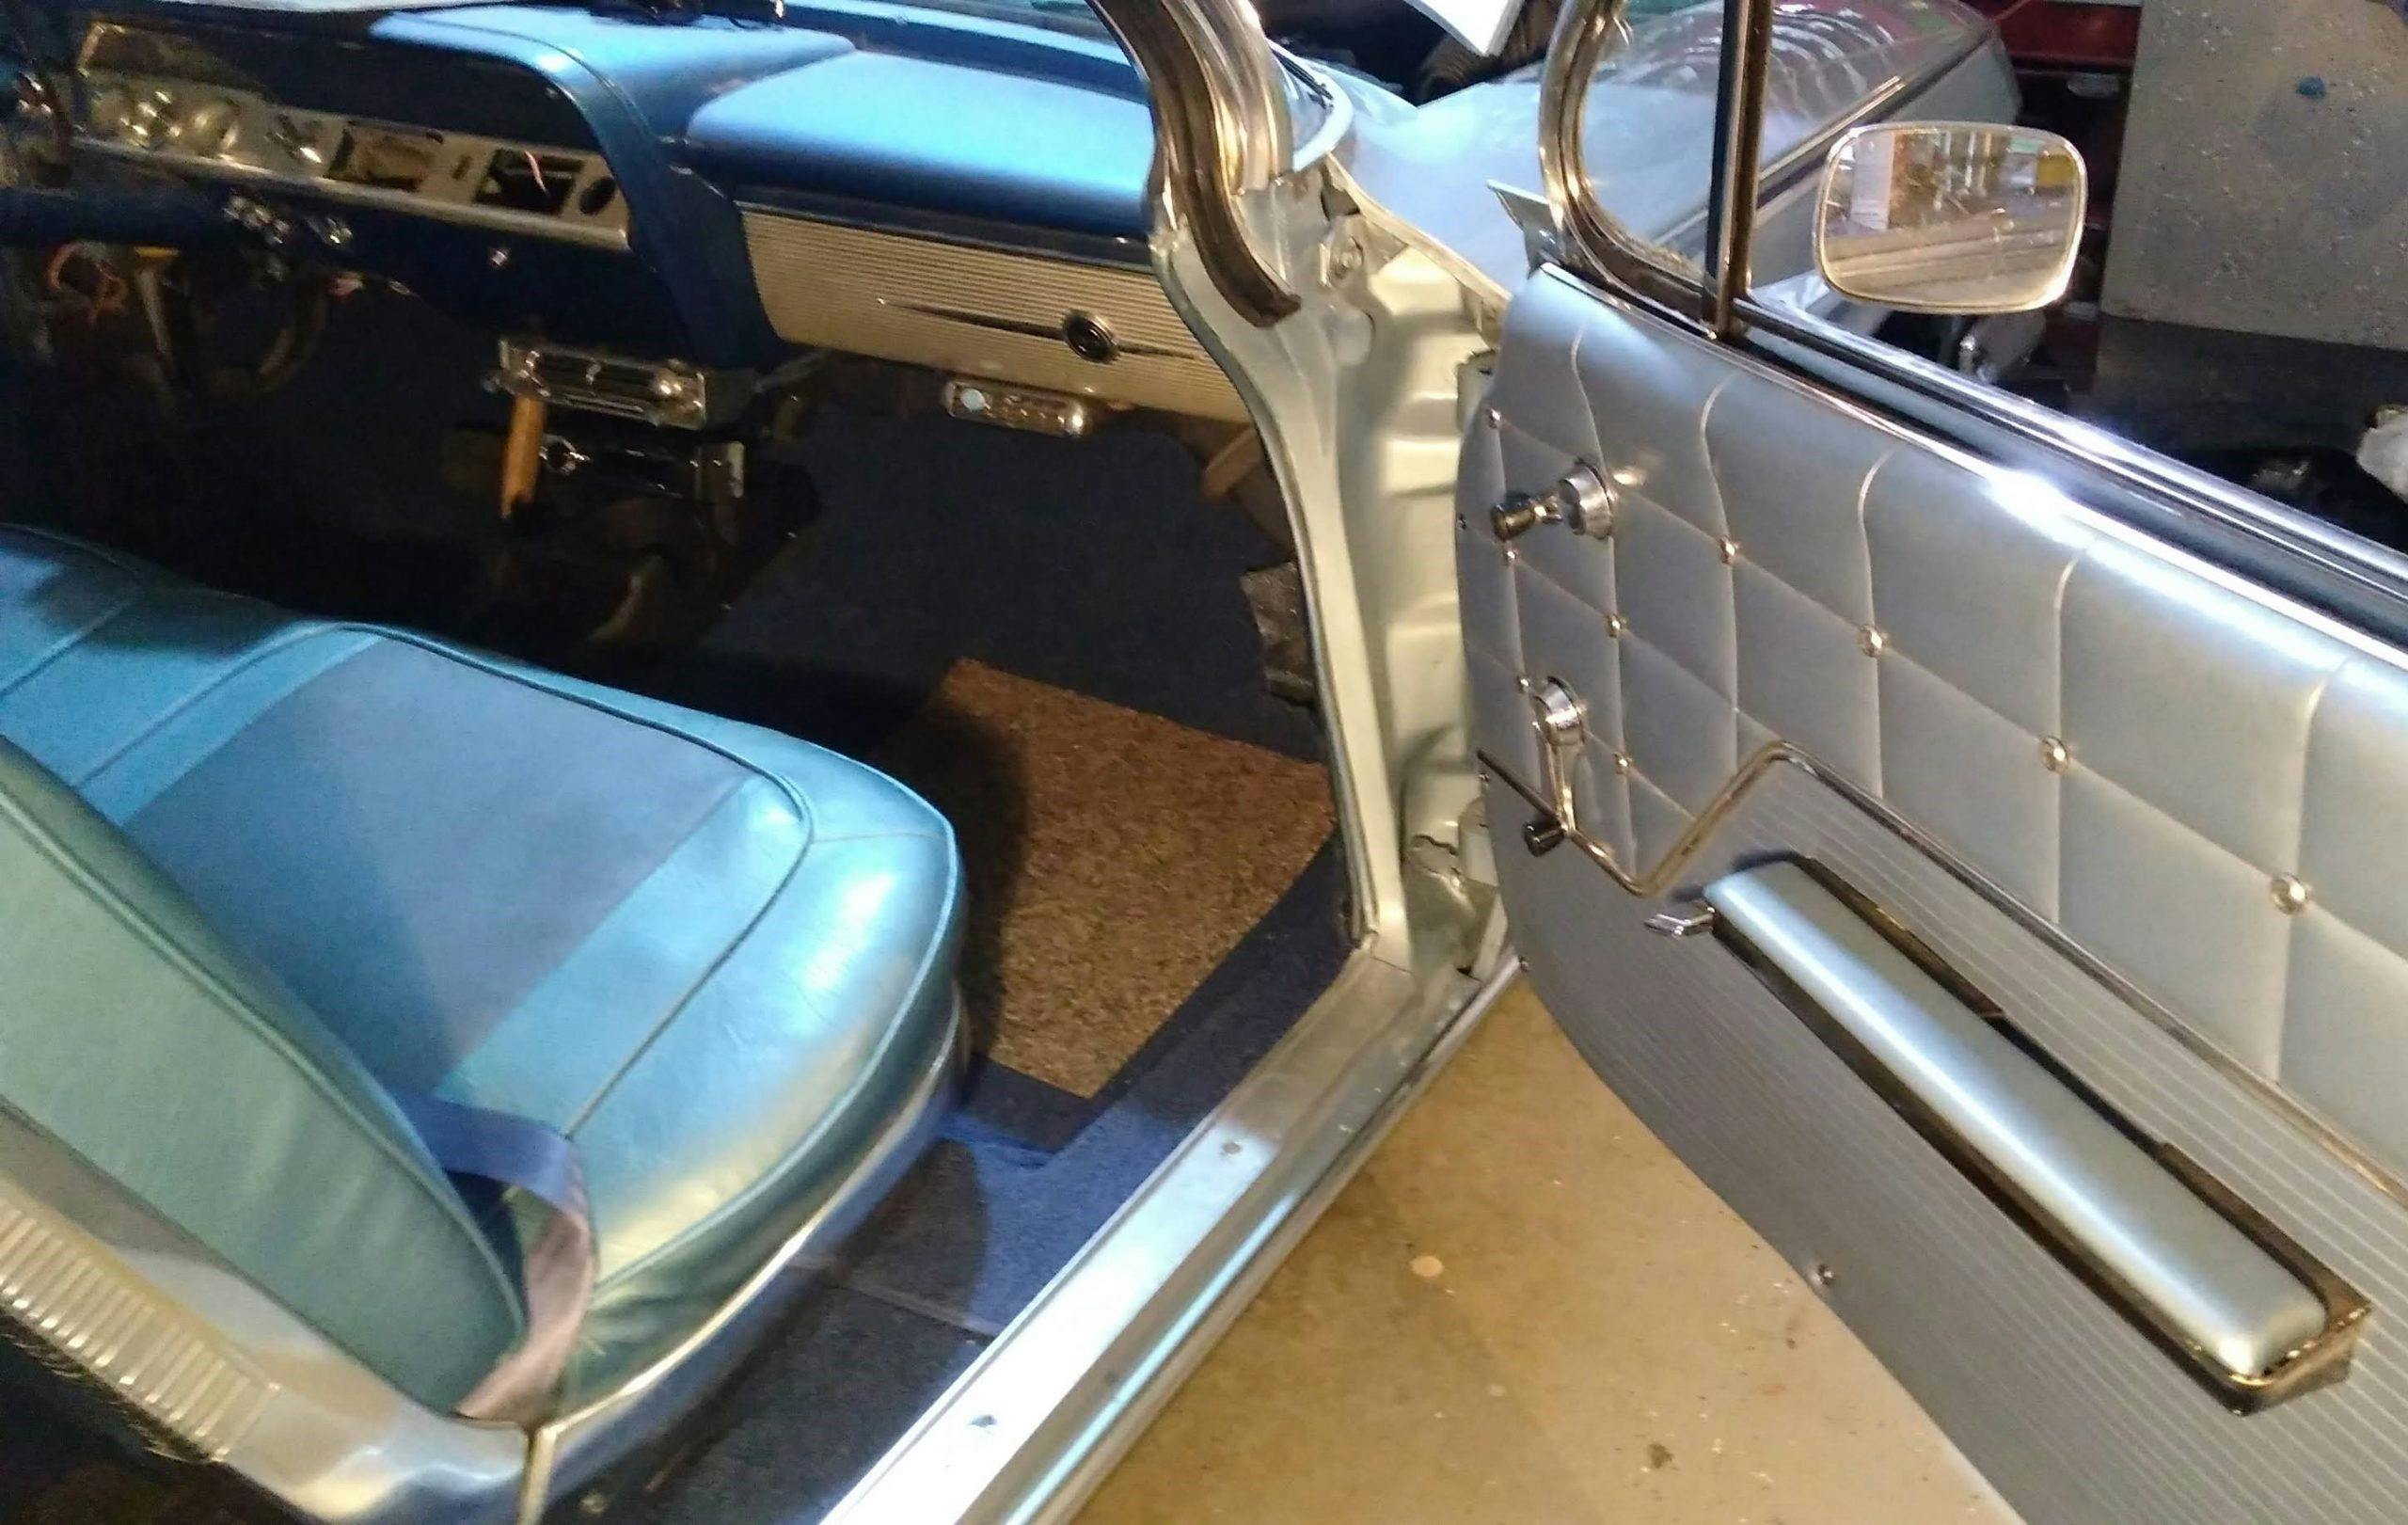 Jason Prince - 1962 Chevrolet Impala - Front interior finished